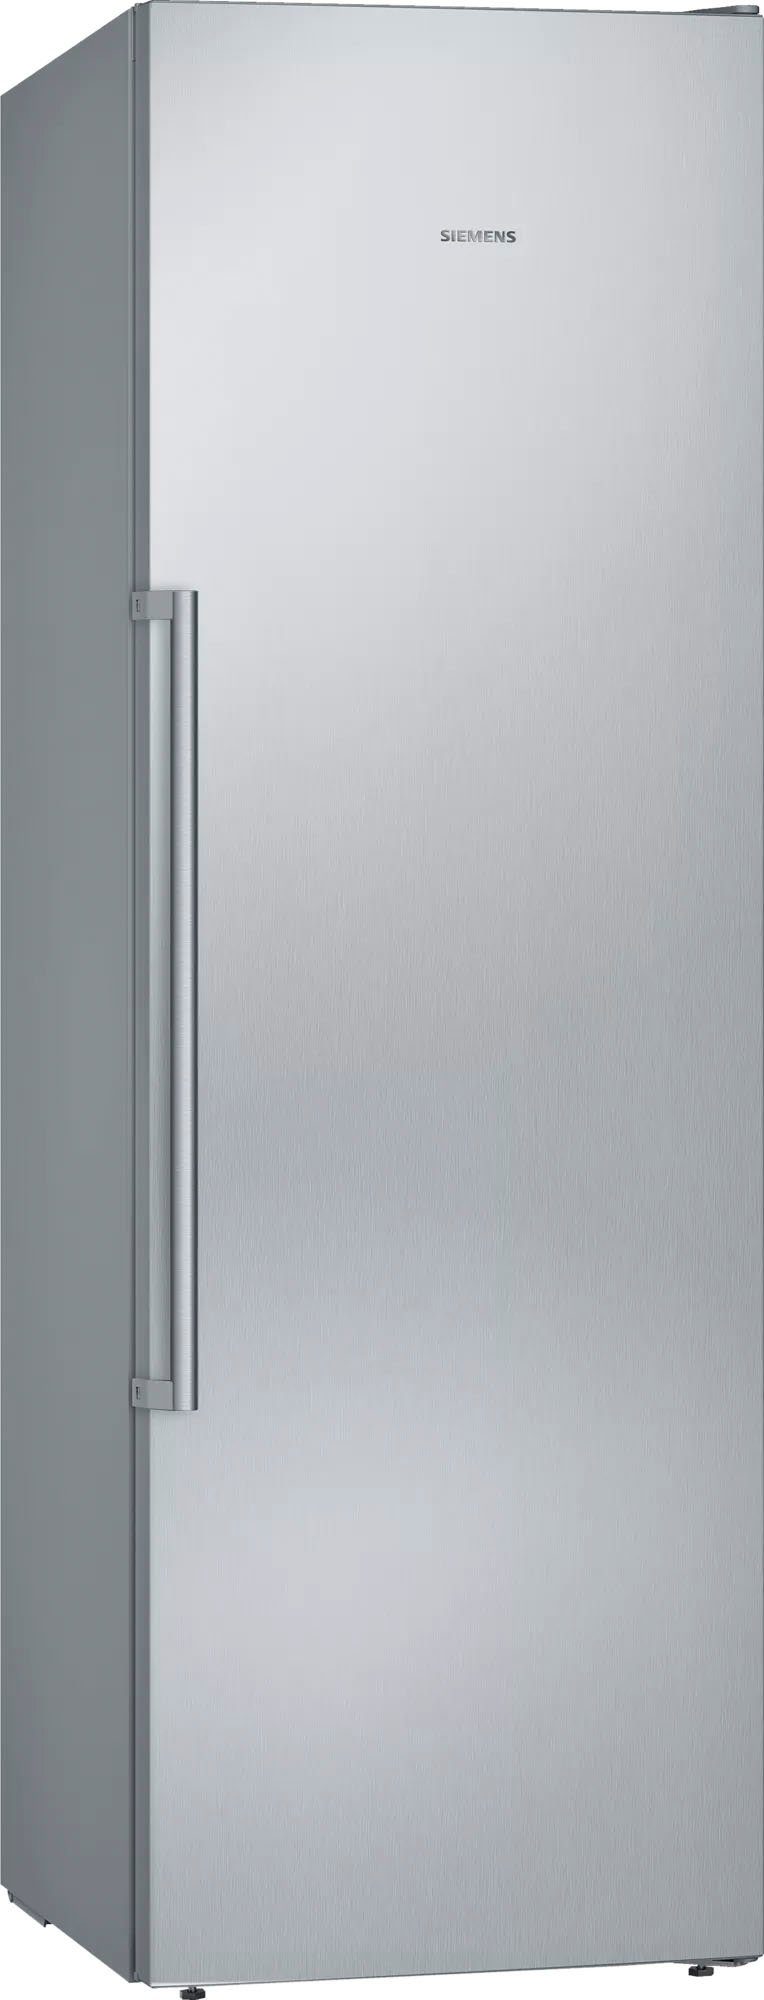 SIEMENS Gefrierschrank iQ500 GS36NAIDP, 186 cm hoch, 60 cm breit, Schnelles  Einfrieren von Lebensmitteln in großen Mengen - superFreezing